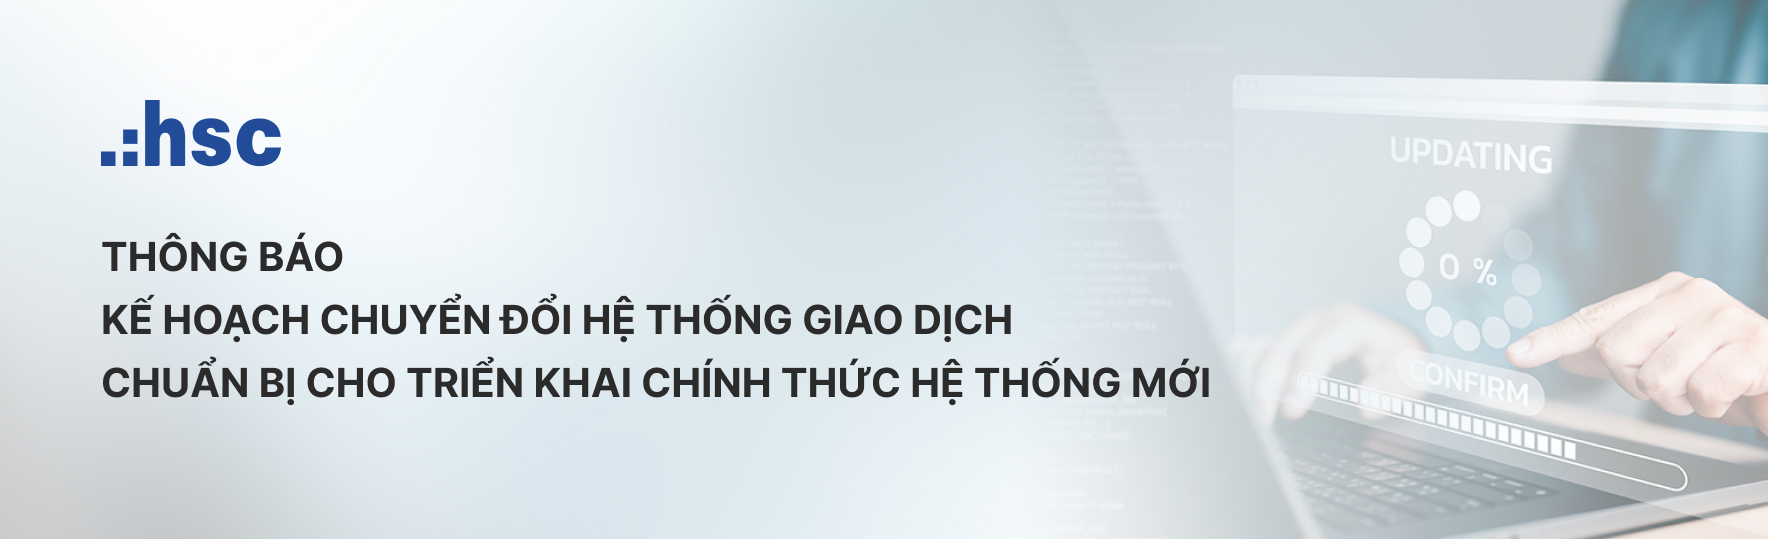 Chuyen-doi-he-thong-giao-dich - Banner post -VN